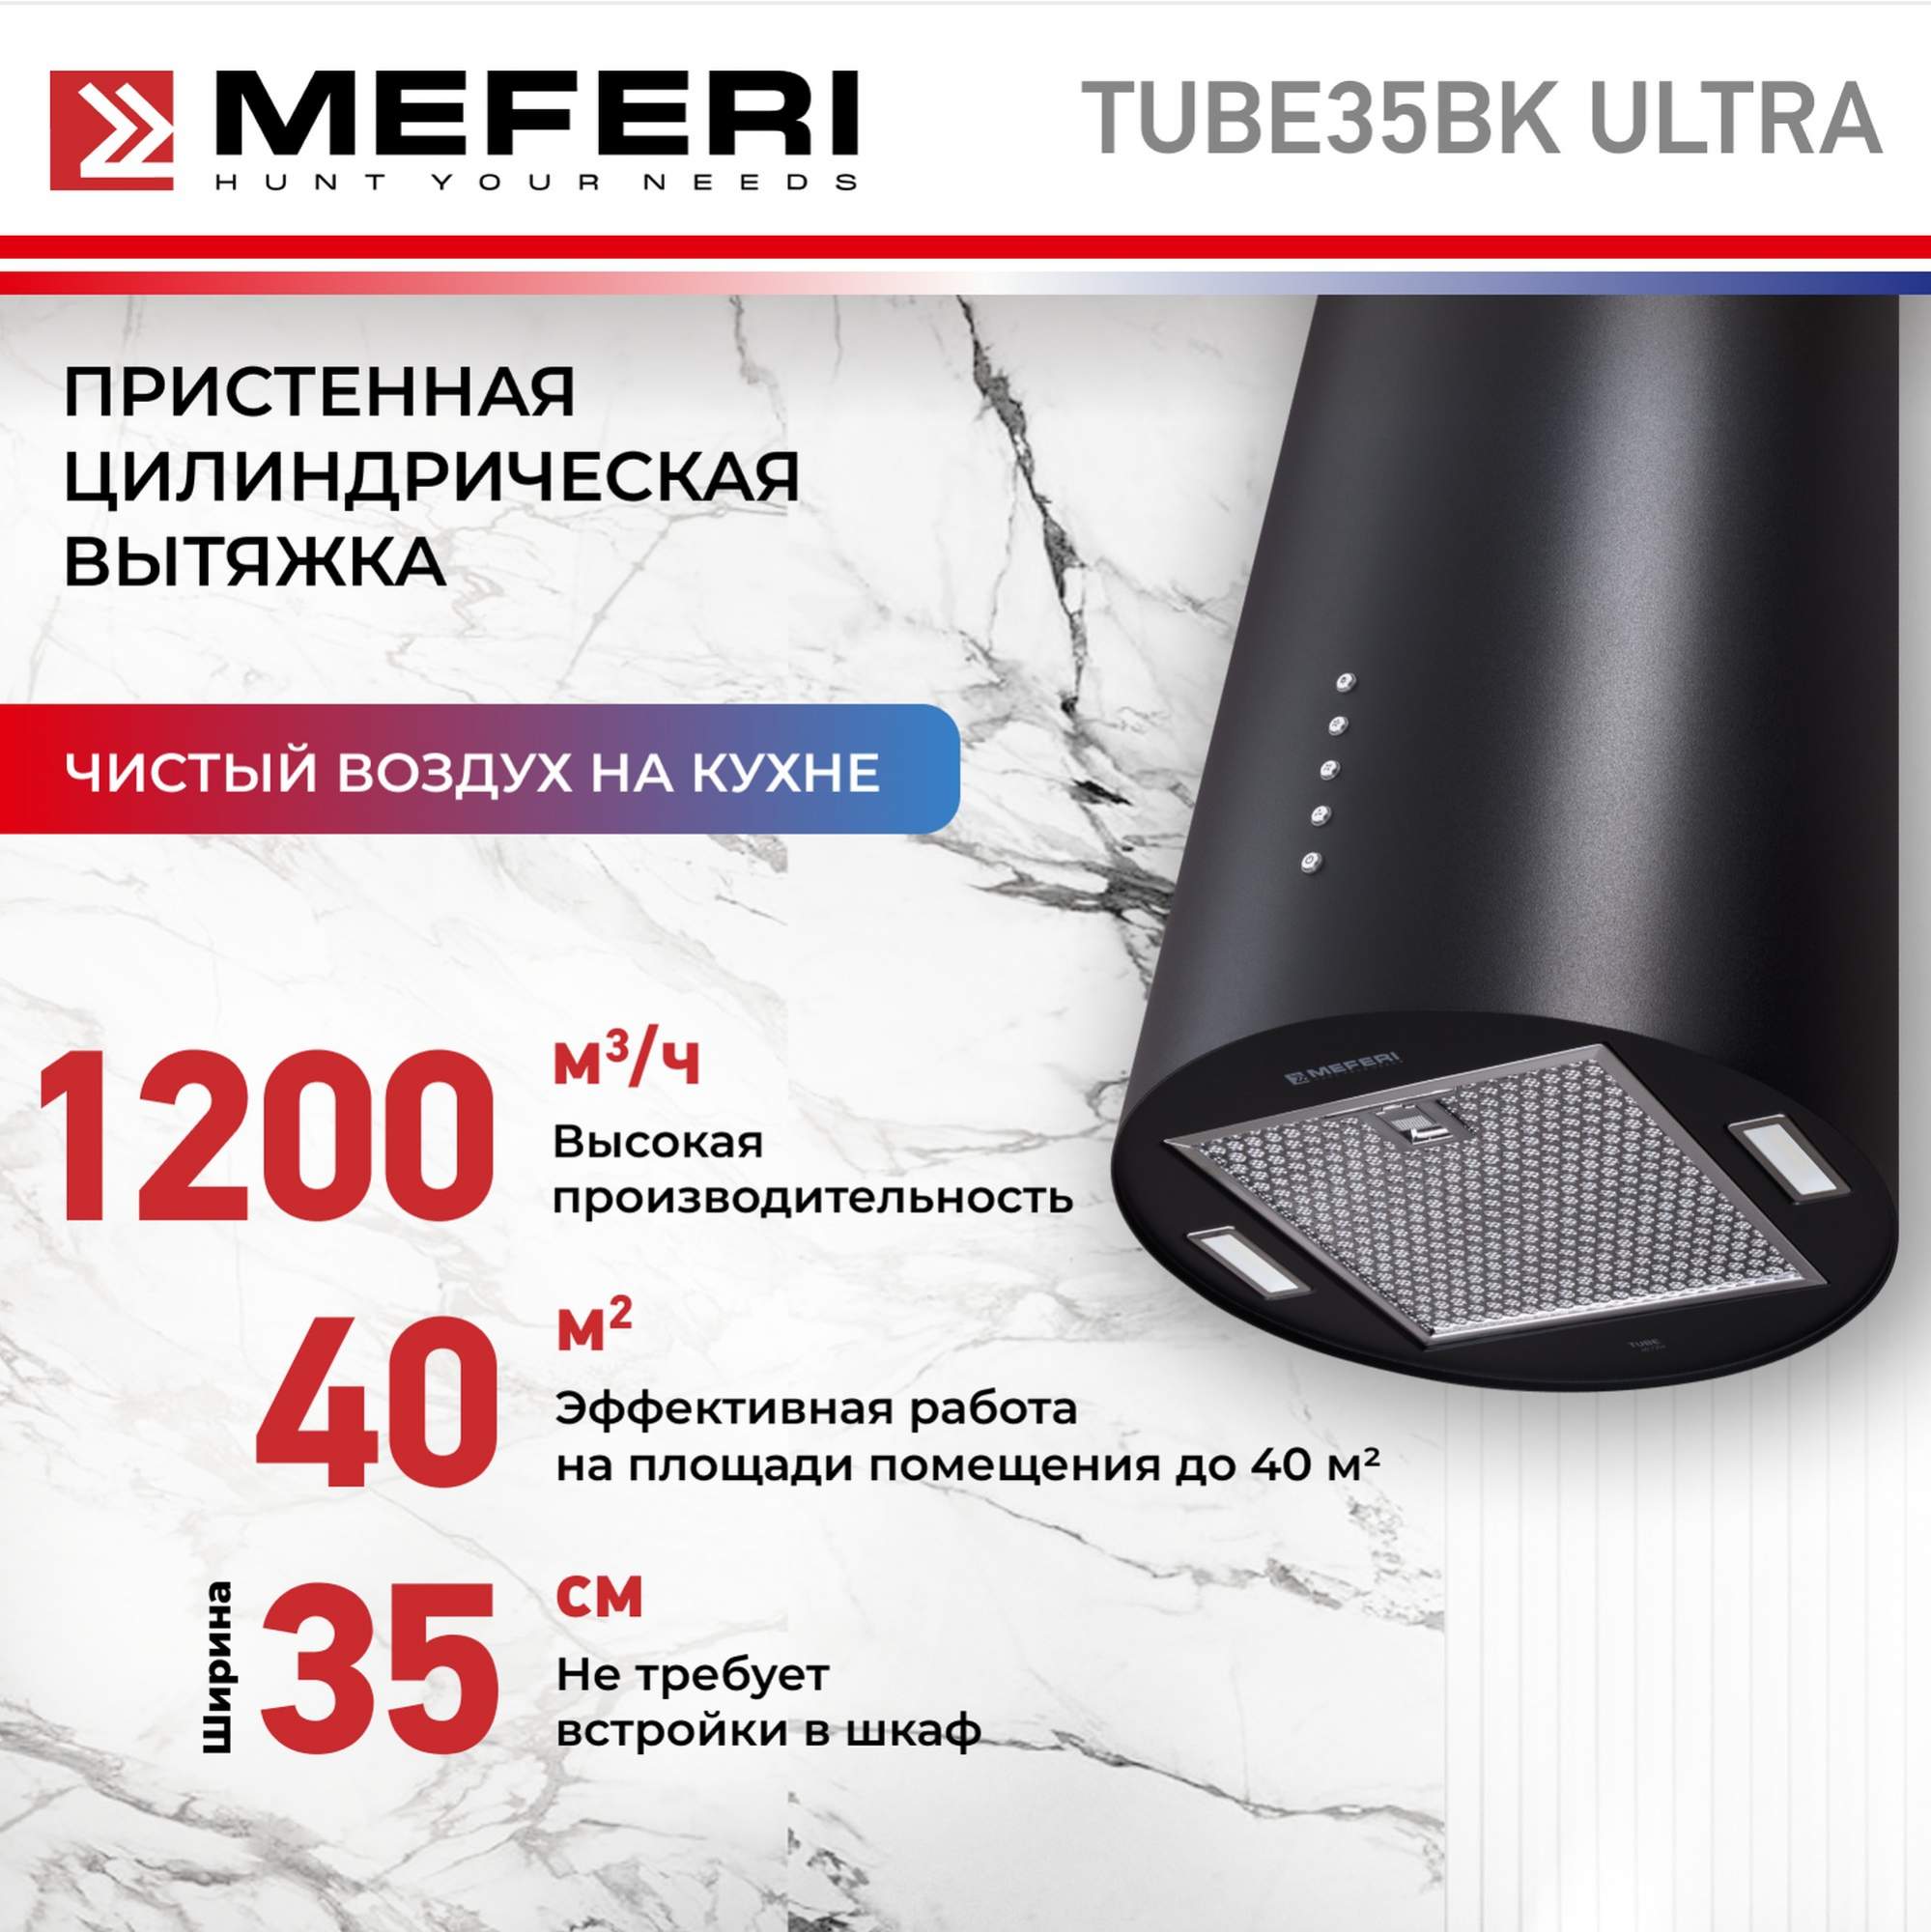 Цилиндрическая вытяжка Meferi TUBE35BK ULTRA цилиндрическая вытяжка meferi tube35bk ultra